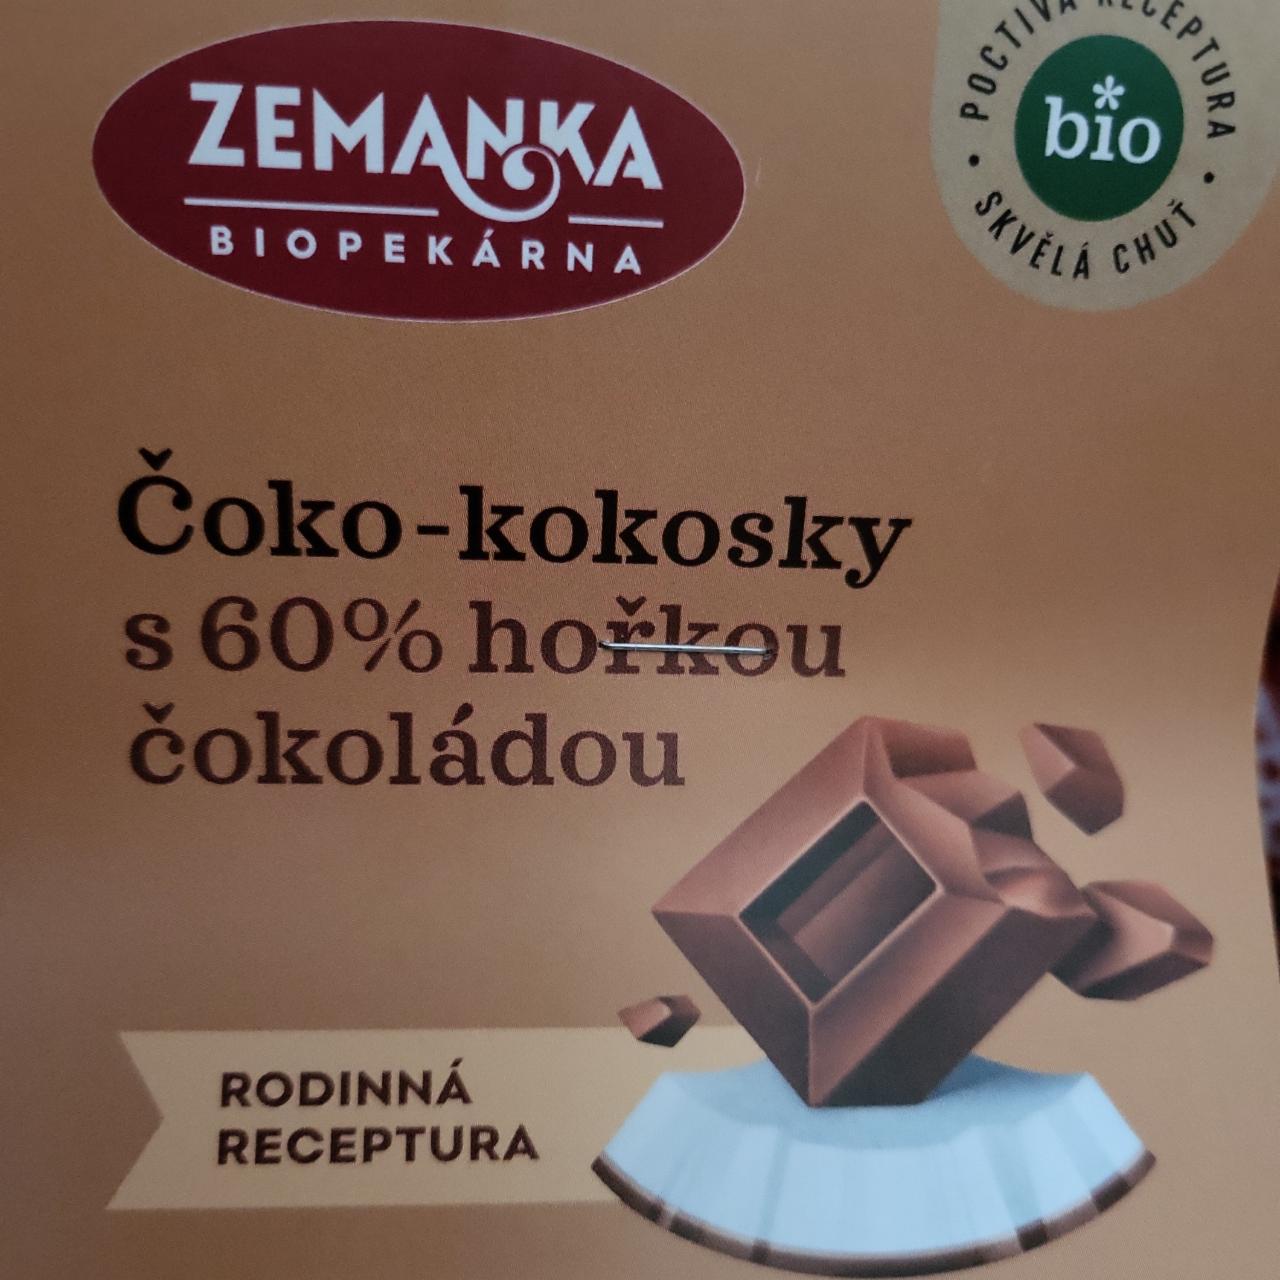 Fotografie - Čoko-kokosky s 60% hořkou čokoládou Zemanka